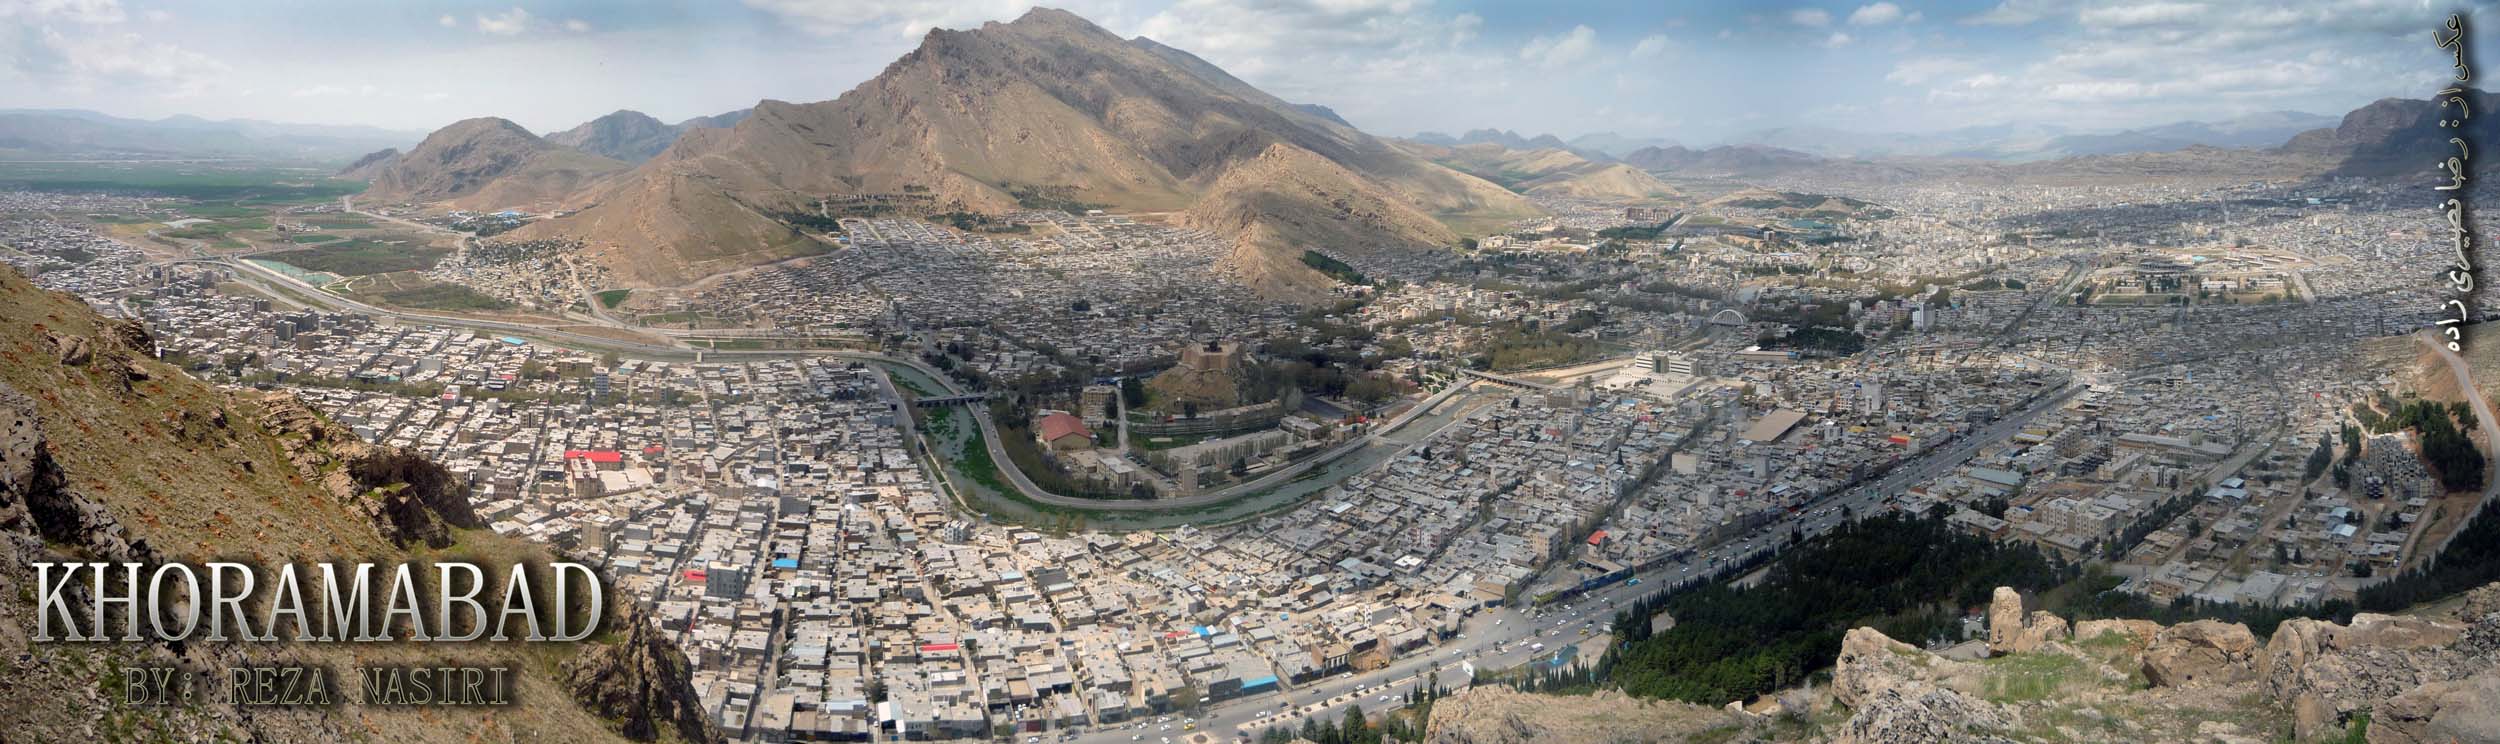 ائتلاف توسعه و آبادانی شهر خرم آباد لیست می دهد